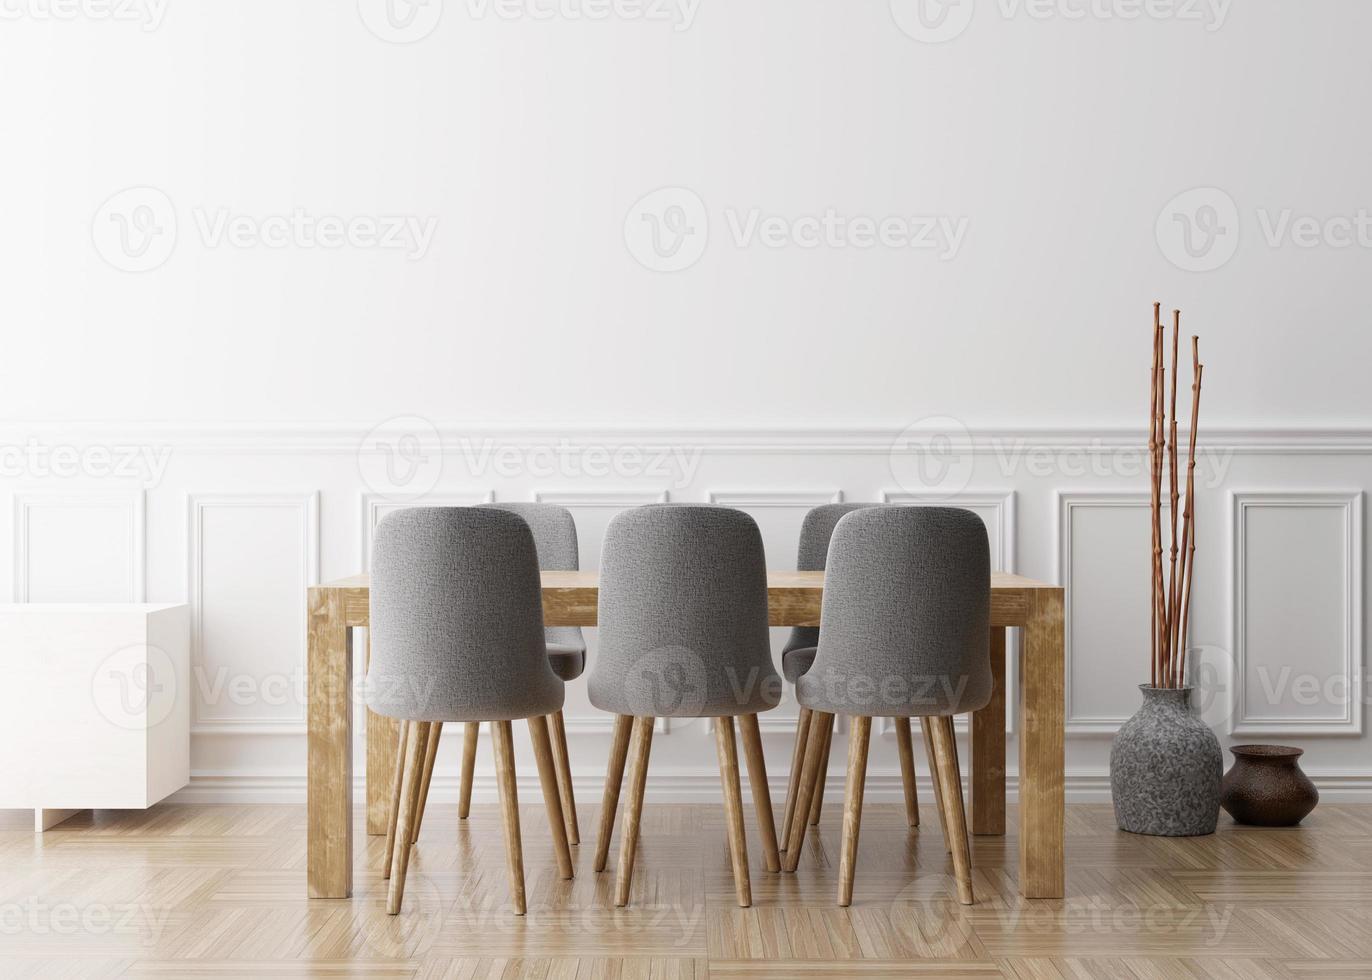 mur blanc vide dans la salle à manger moderne. maquette d'intérieur dans un style classique. espace libre, copiez l'espace pour votre image, votre texte ou un autre dessin. table à manger avec chaises grises, parquet. rendu 3d. photo